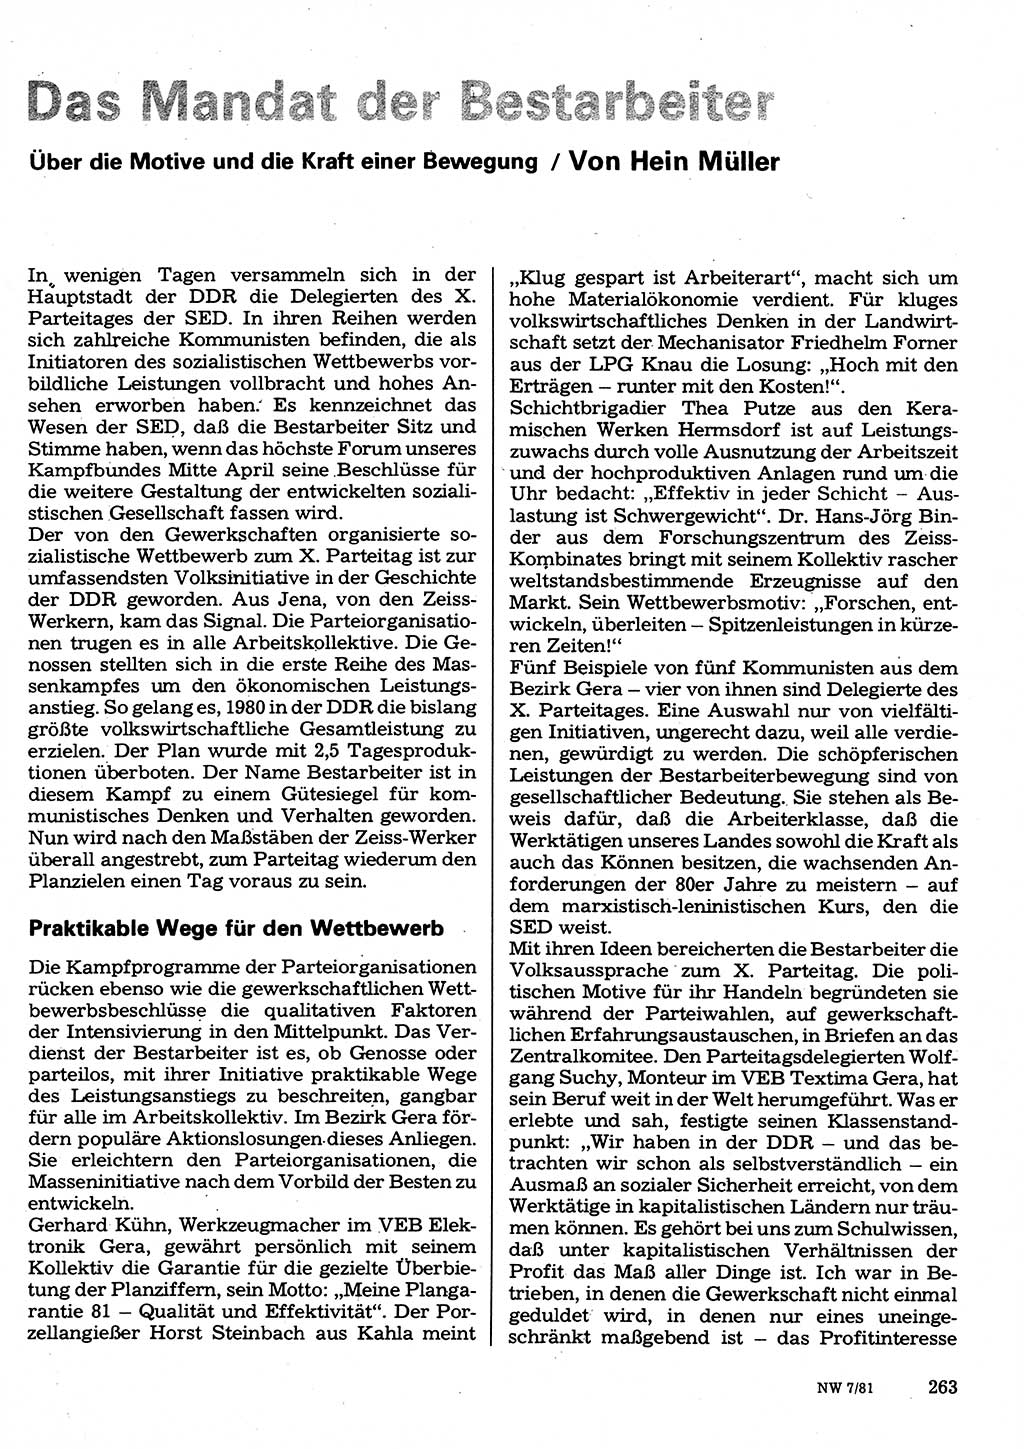 Neuer Weg (NW), Organ des Zentralkomitees (ZK) der SED (Sozialistische Einheitspartei Deutschlands) für Fragen des Parteilebens, 36. Jahrgang [Deutsche Demokratische Republik (DDR)] 1981, Seite 263 (NW ZK SED DDR 1981, S. 263)